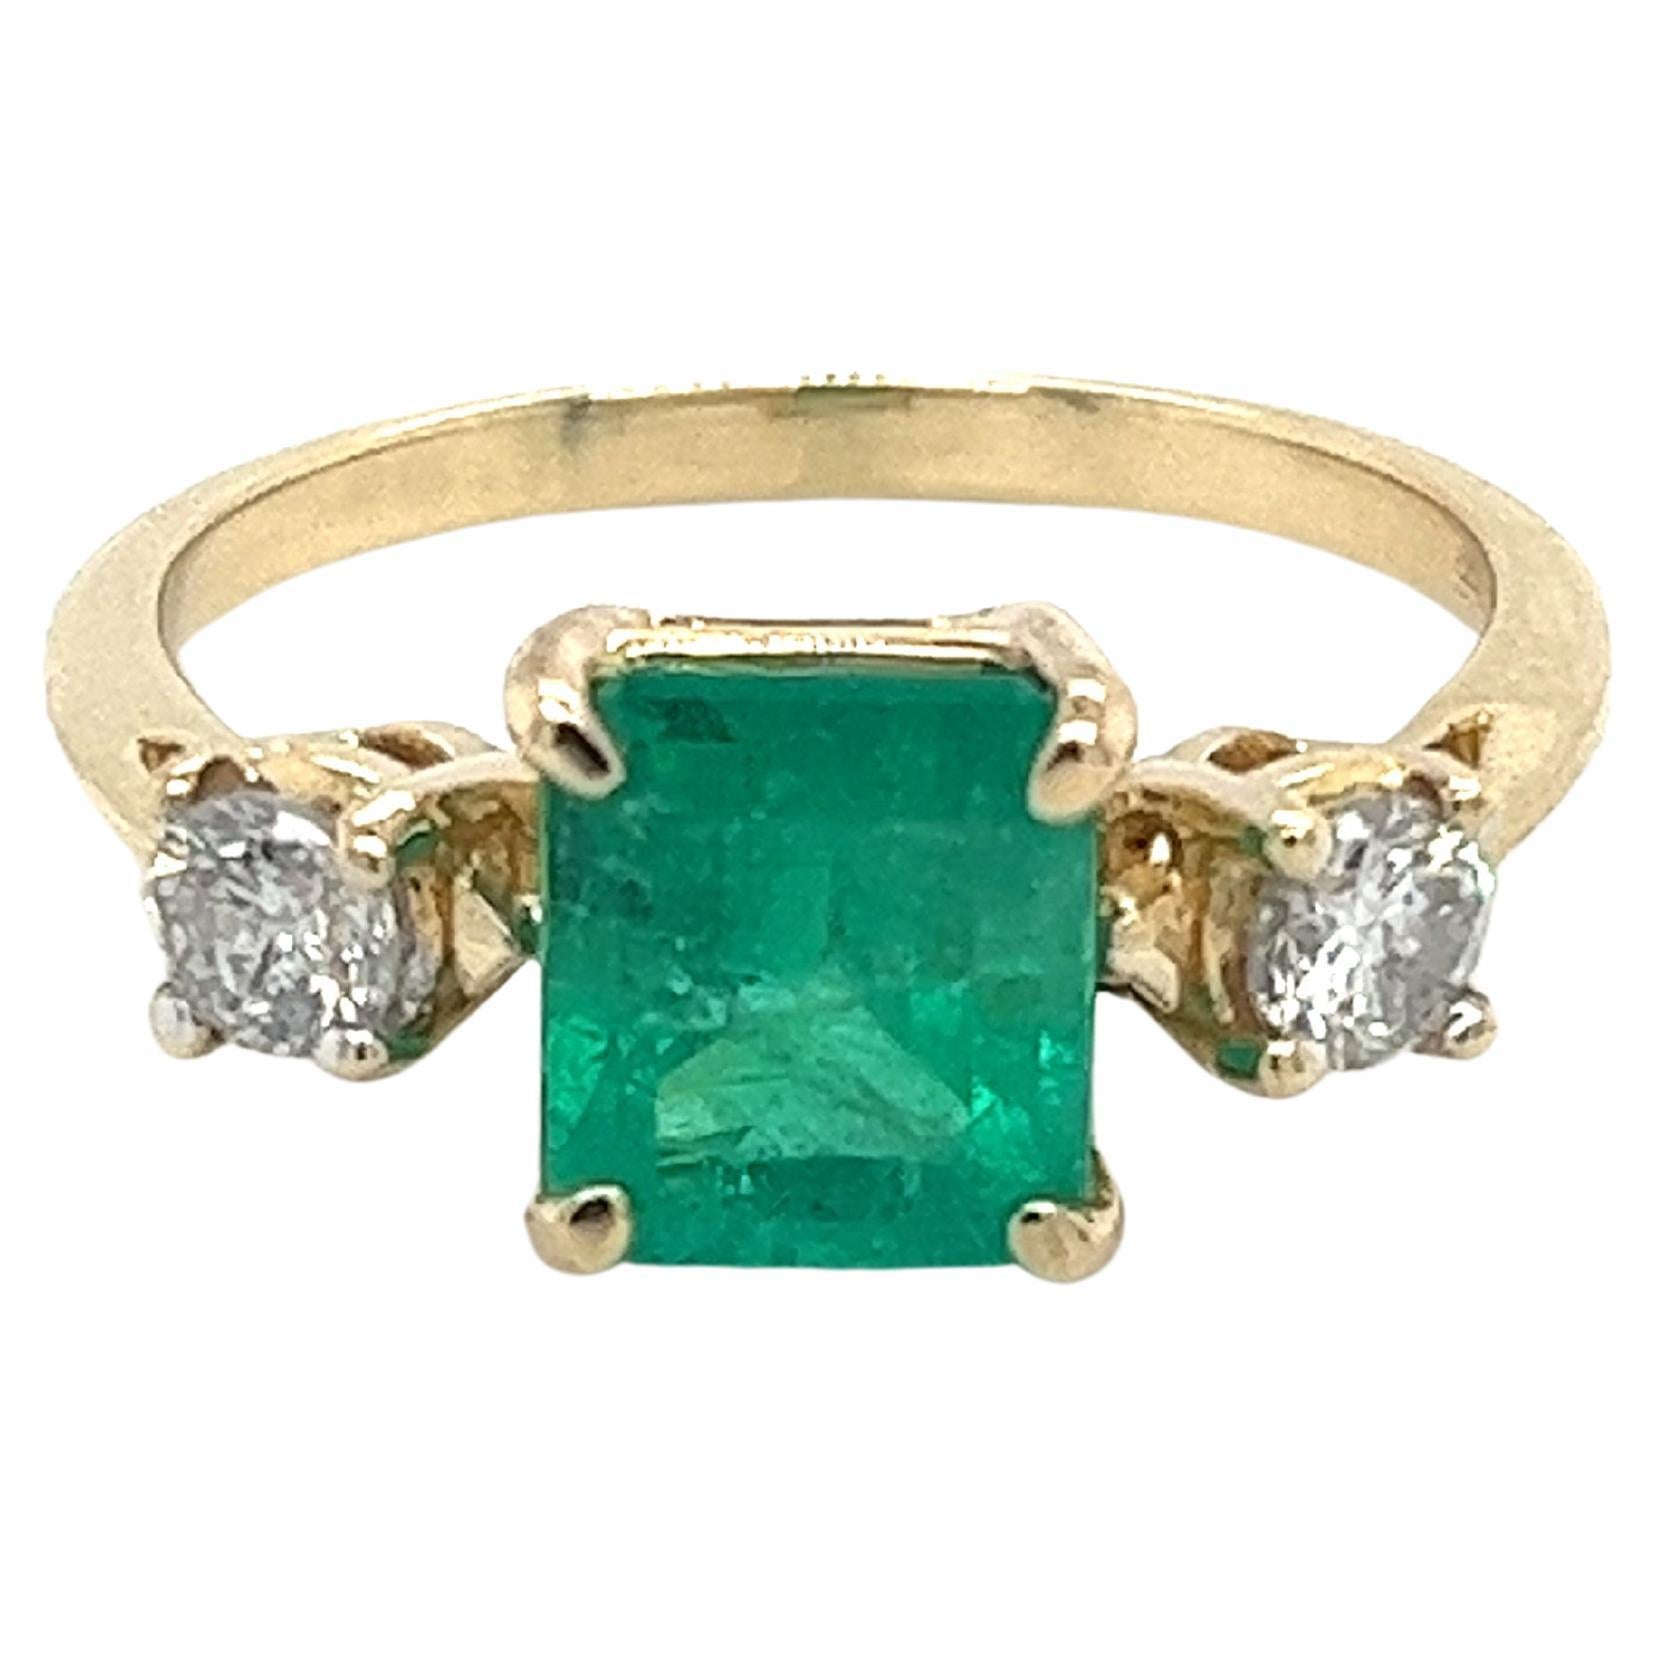 Natürliche 2,05 Karat kolumbianischen Smaragd und Diamant drei Stein Ring in 14k massivem Gelbgold. Mit einem eleganten, dünnen Band, das die Mittelsteine hervorhebt. Eine zierliche Fassung mit einem Mittelstein von makelloser Qualität. Der Smaragd